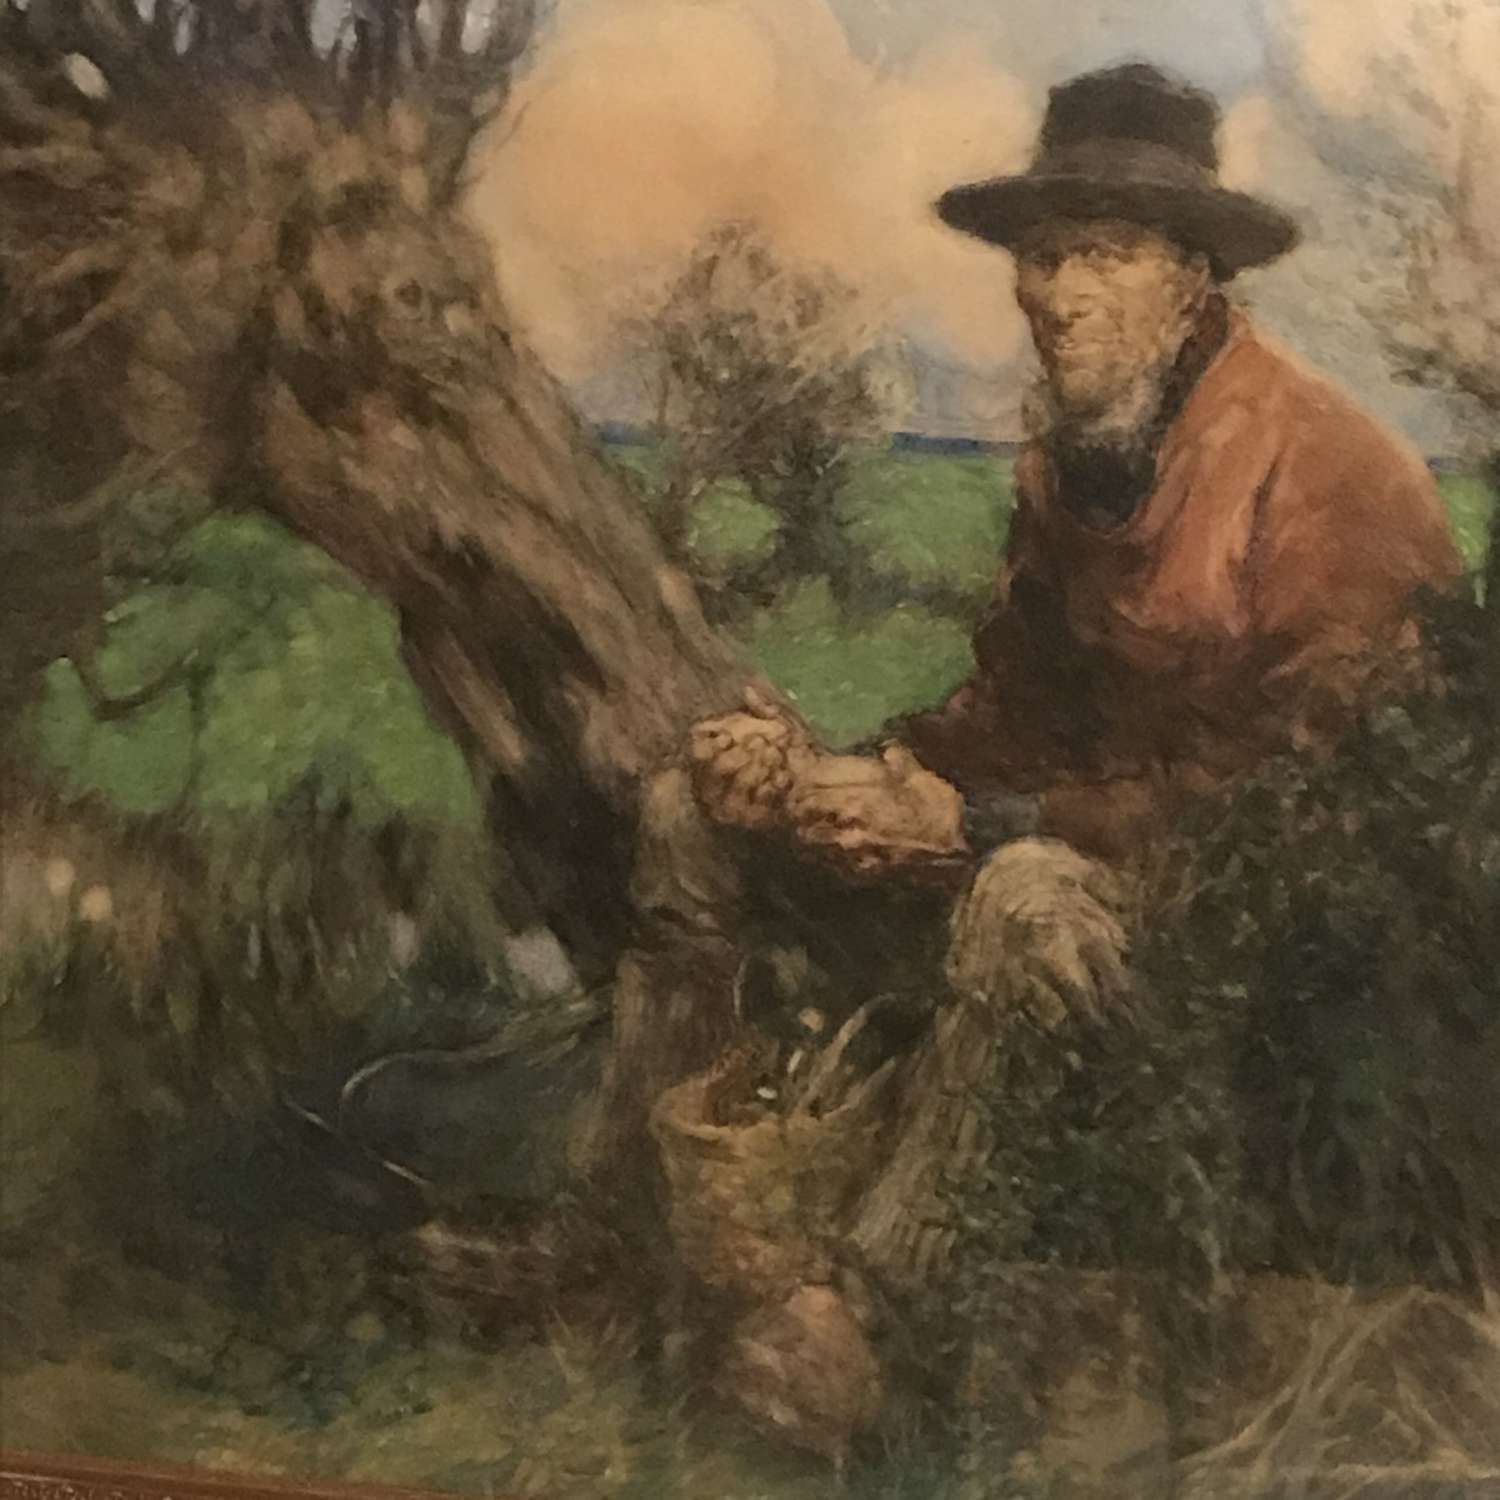 Portrait of a Farm Labourer circa 1900